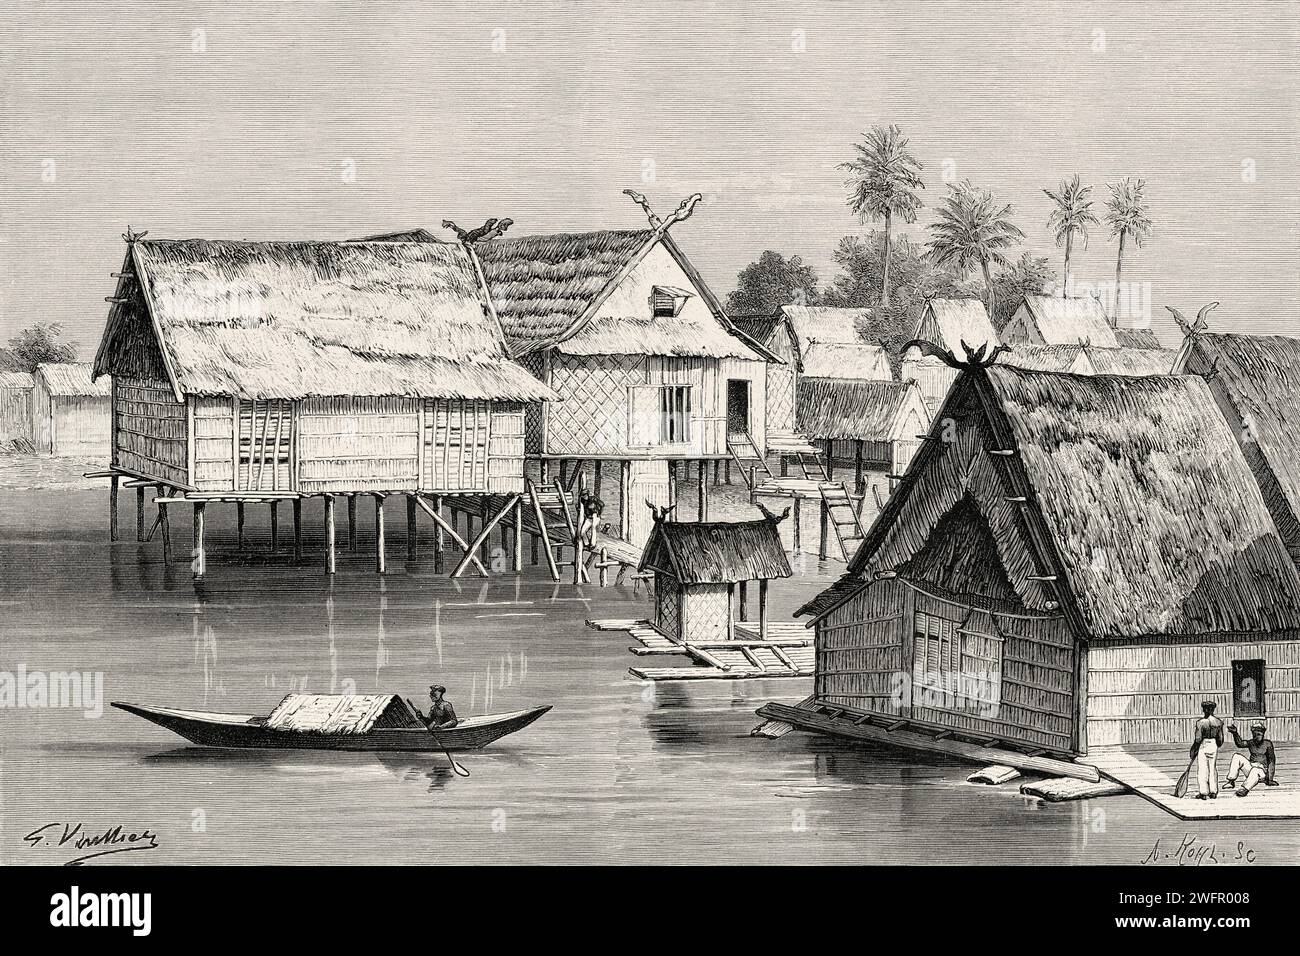 Tenggarong, Kalimantan oriental. Île de Bornéo, Indonésie. De Koutei à Banjarmasin, un voyage à travers Bornéo par Carl Bock (1849 - 1932) Banque D'Images